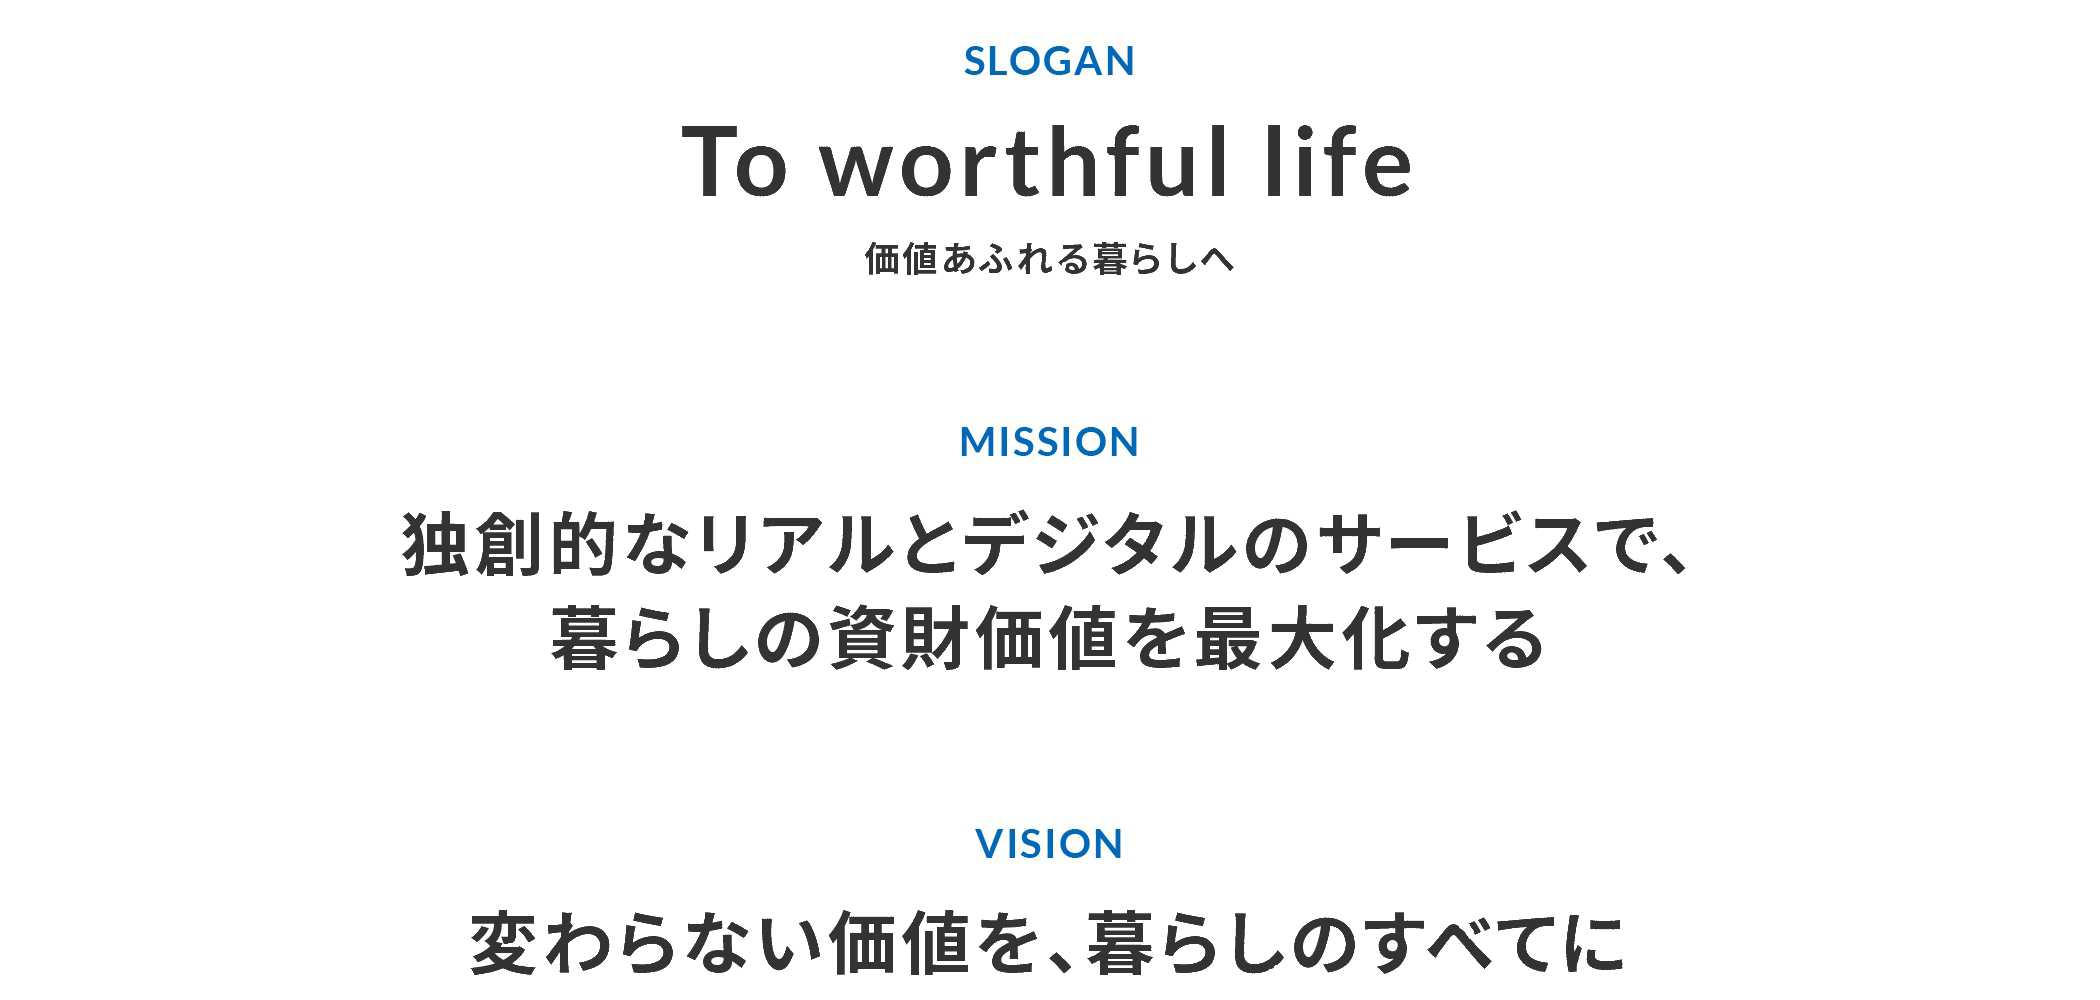 SLOGANは「To worthful life　価値あふれる暮らしへ」。MISSIONは「独創的なリアルとデジタルのサービスで、暮らしの資財価値を最⼤化する」。VISIONは「変わらない価値を、暮らしのすべてに」。